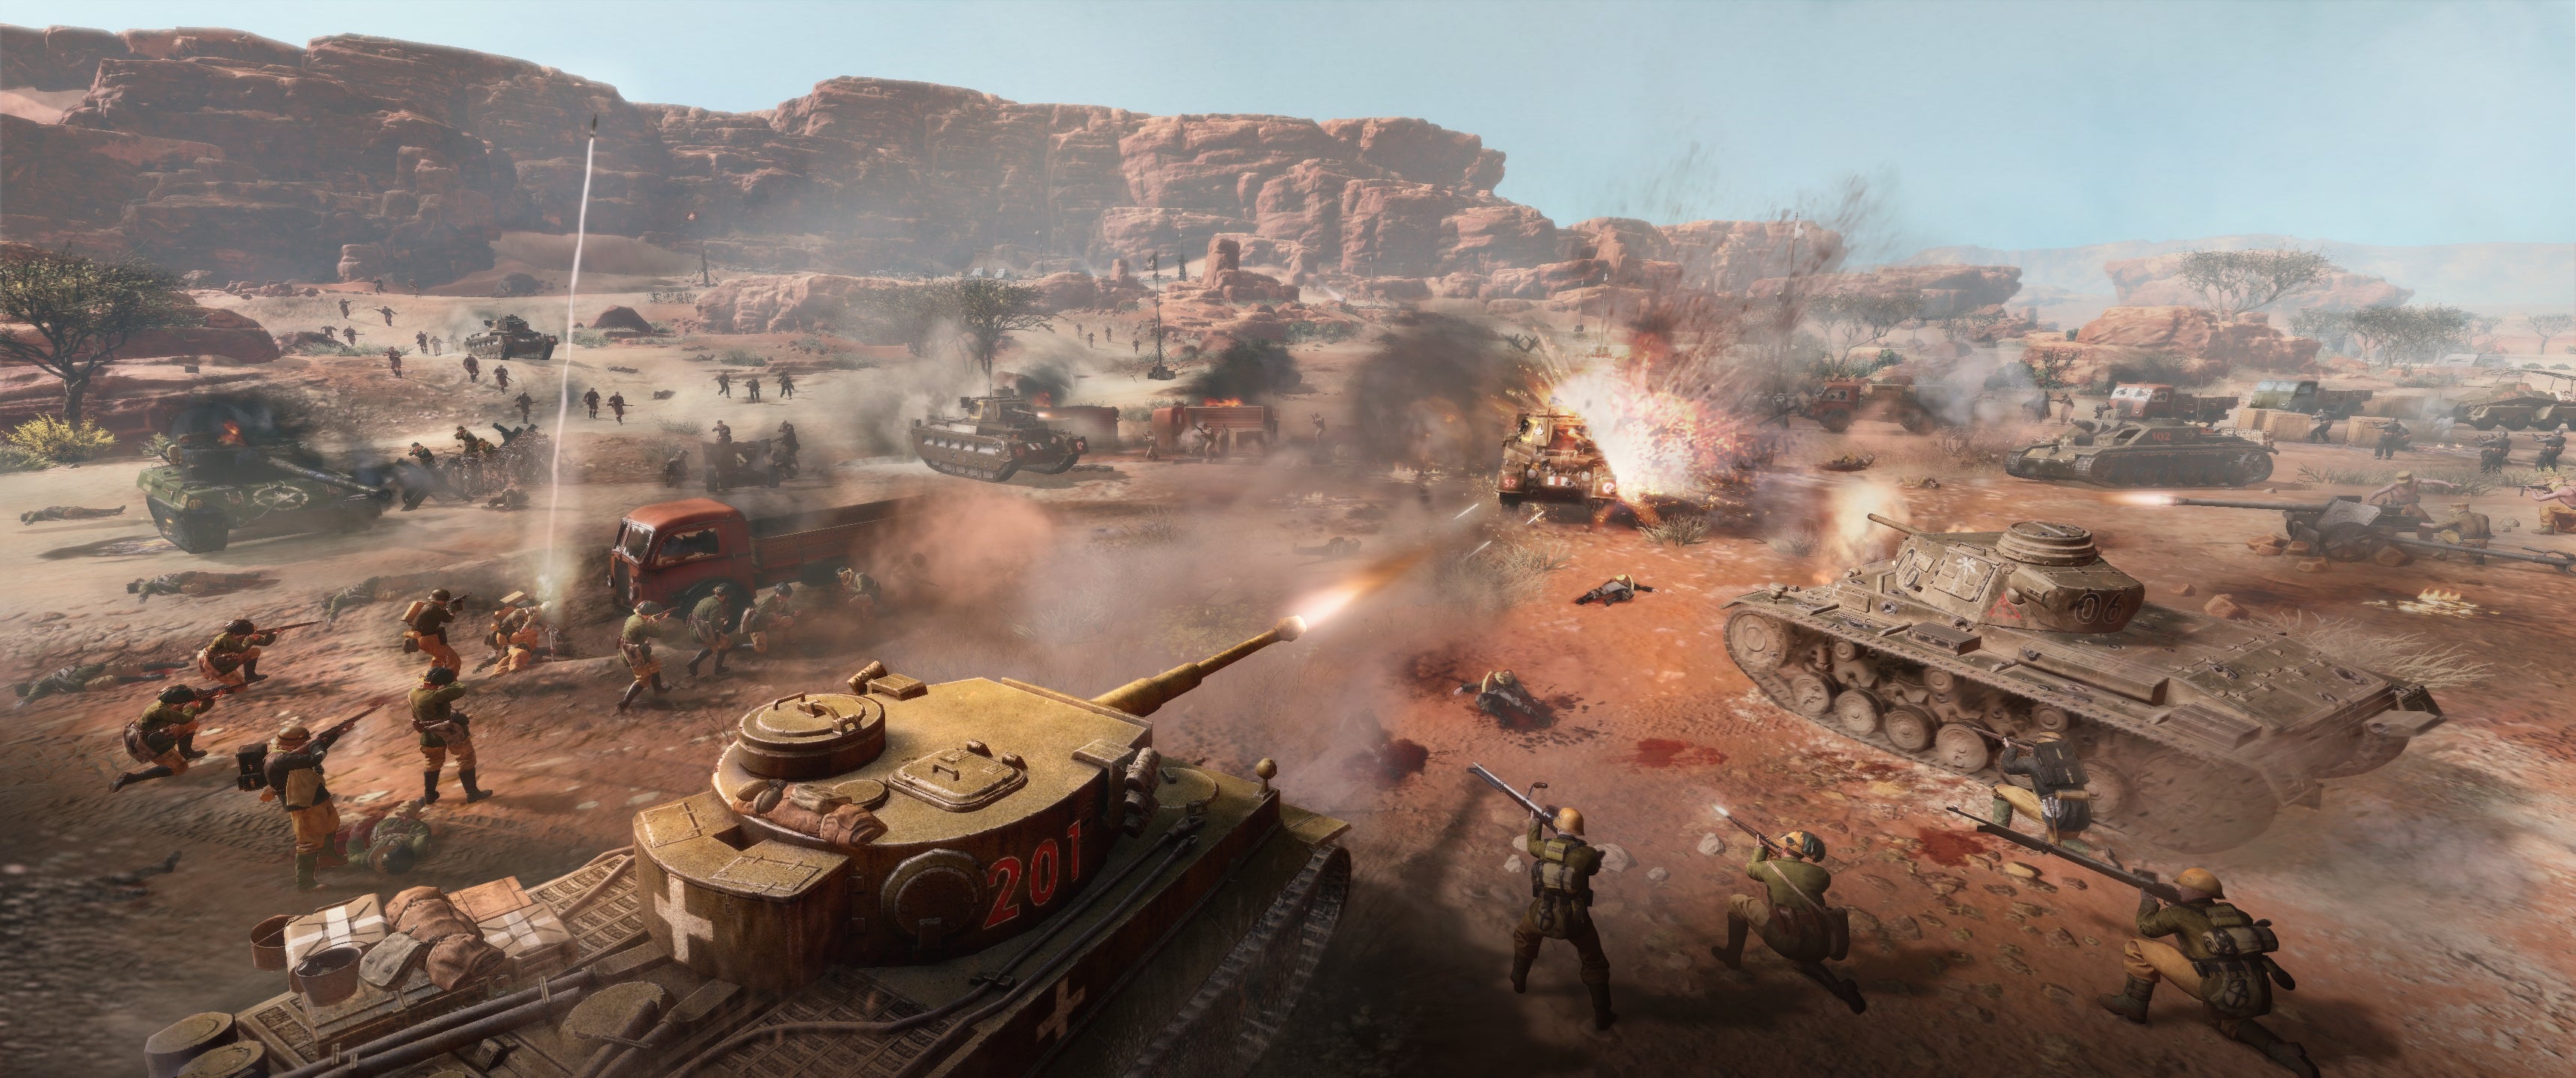 Vista previa de Company of Heroes 3: una toma de acción editada de la guerra de tanques y el convoy de Campbell en el desierto